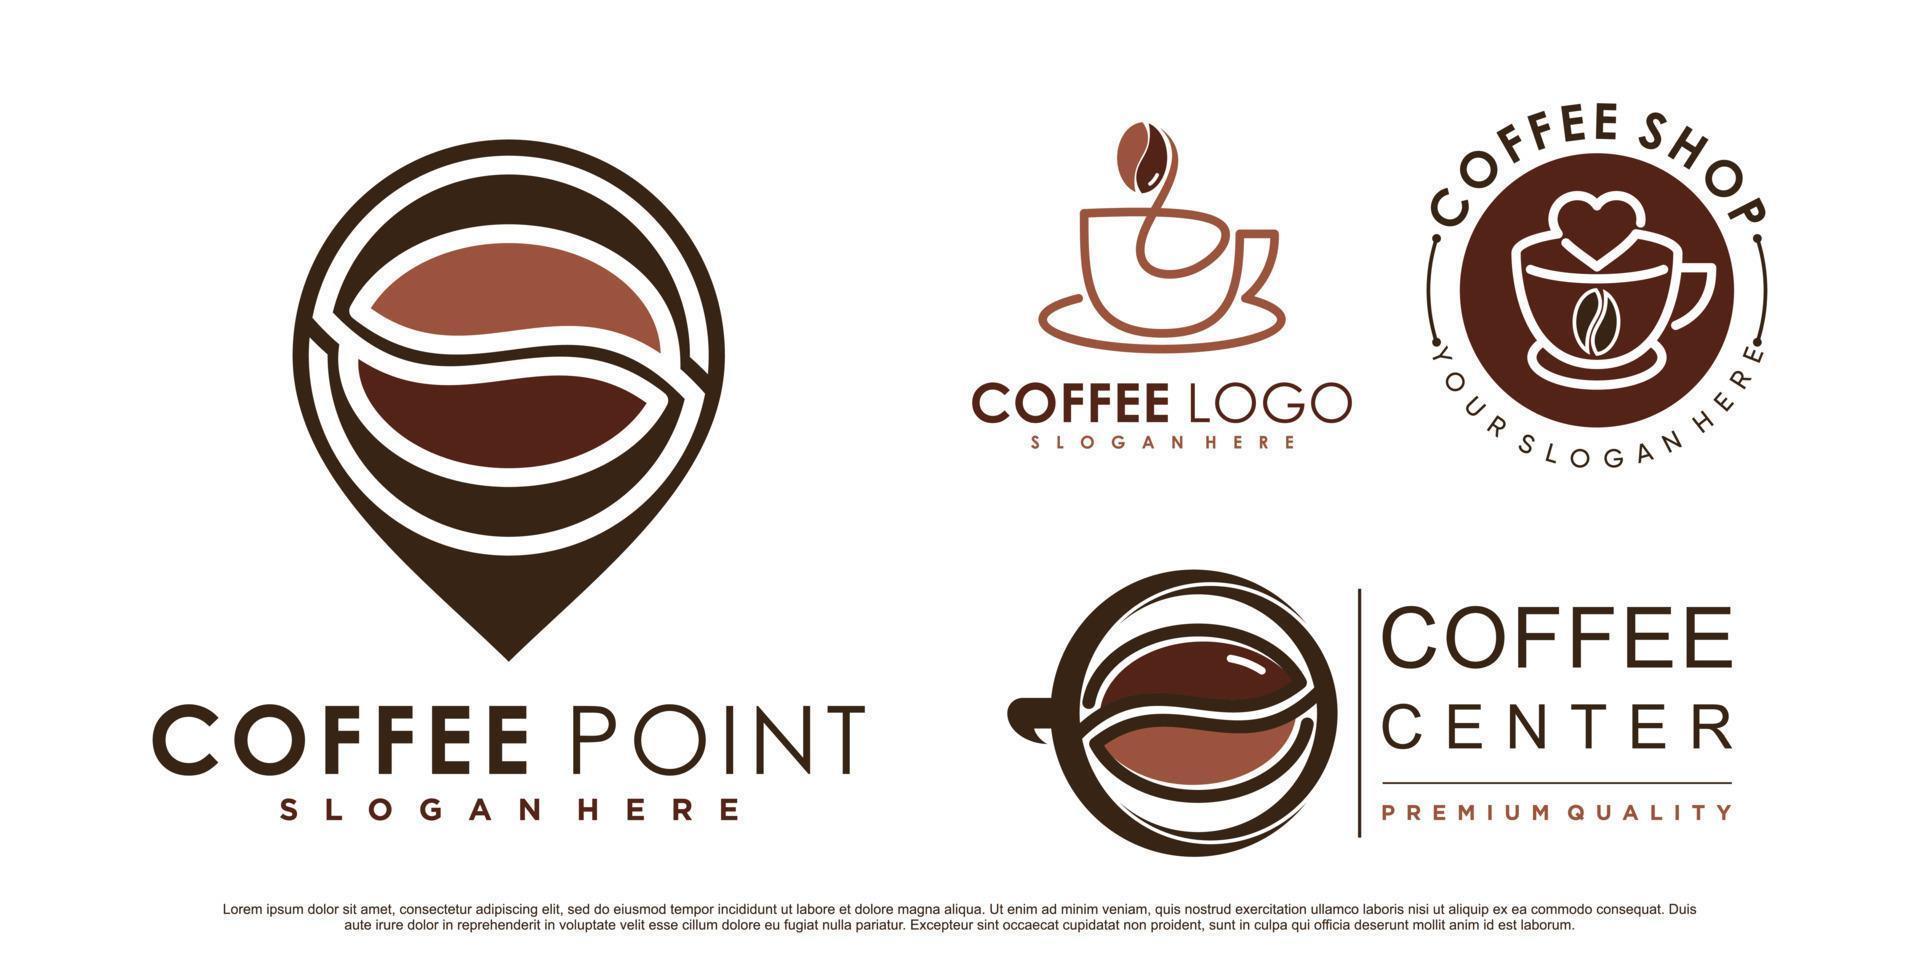 koffie icon set logo en coffeeshop logo ontwerp inspiratie met creatieve element premium vector